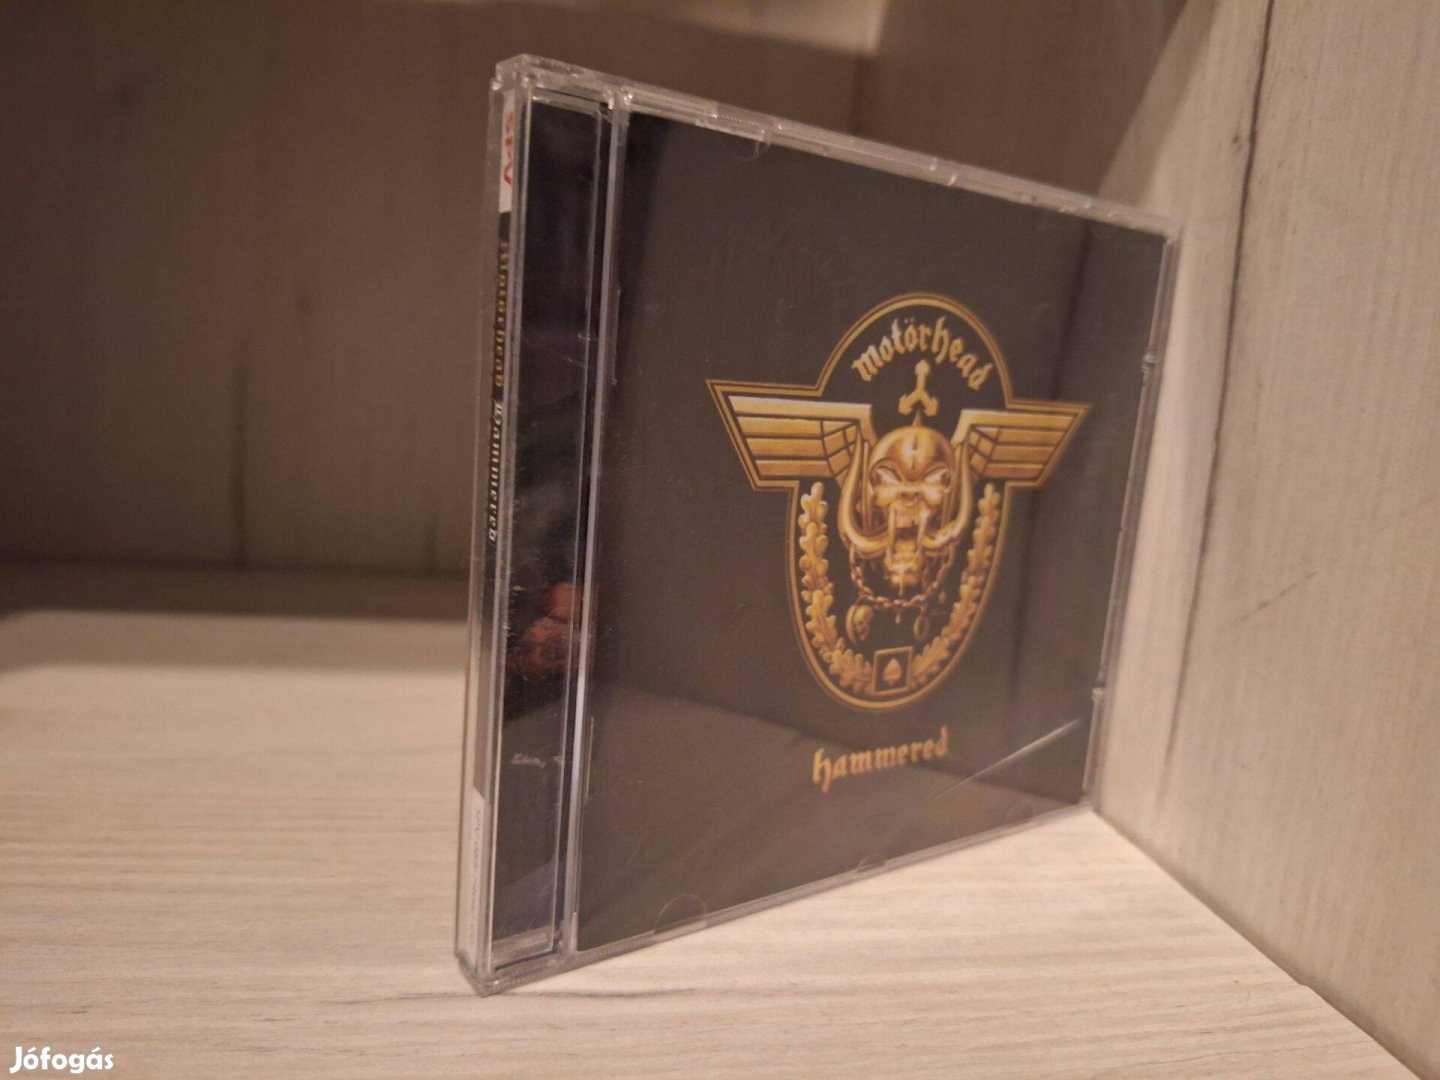 Motörhead - Hammered CD